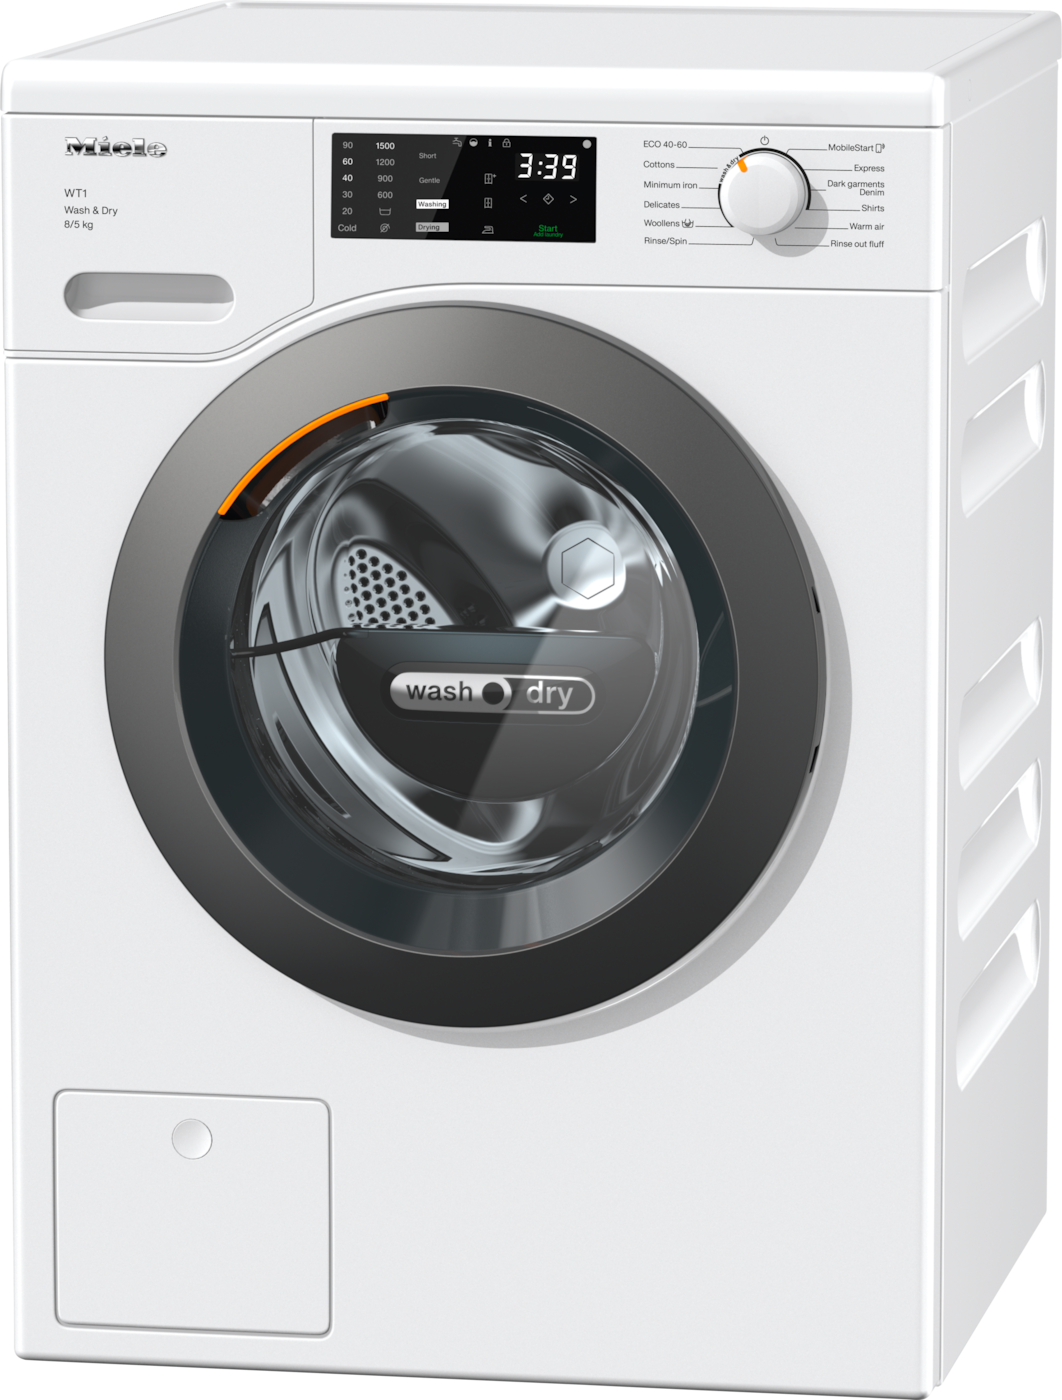 WTD160 WCS 8/5 kg - WT1 洗衣乾衣機： 